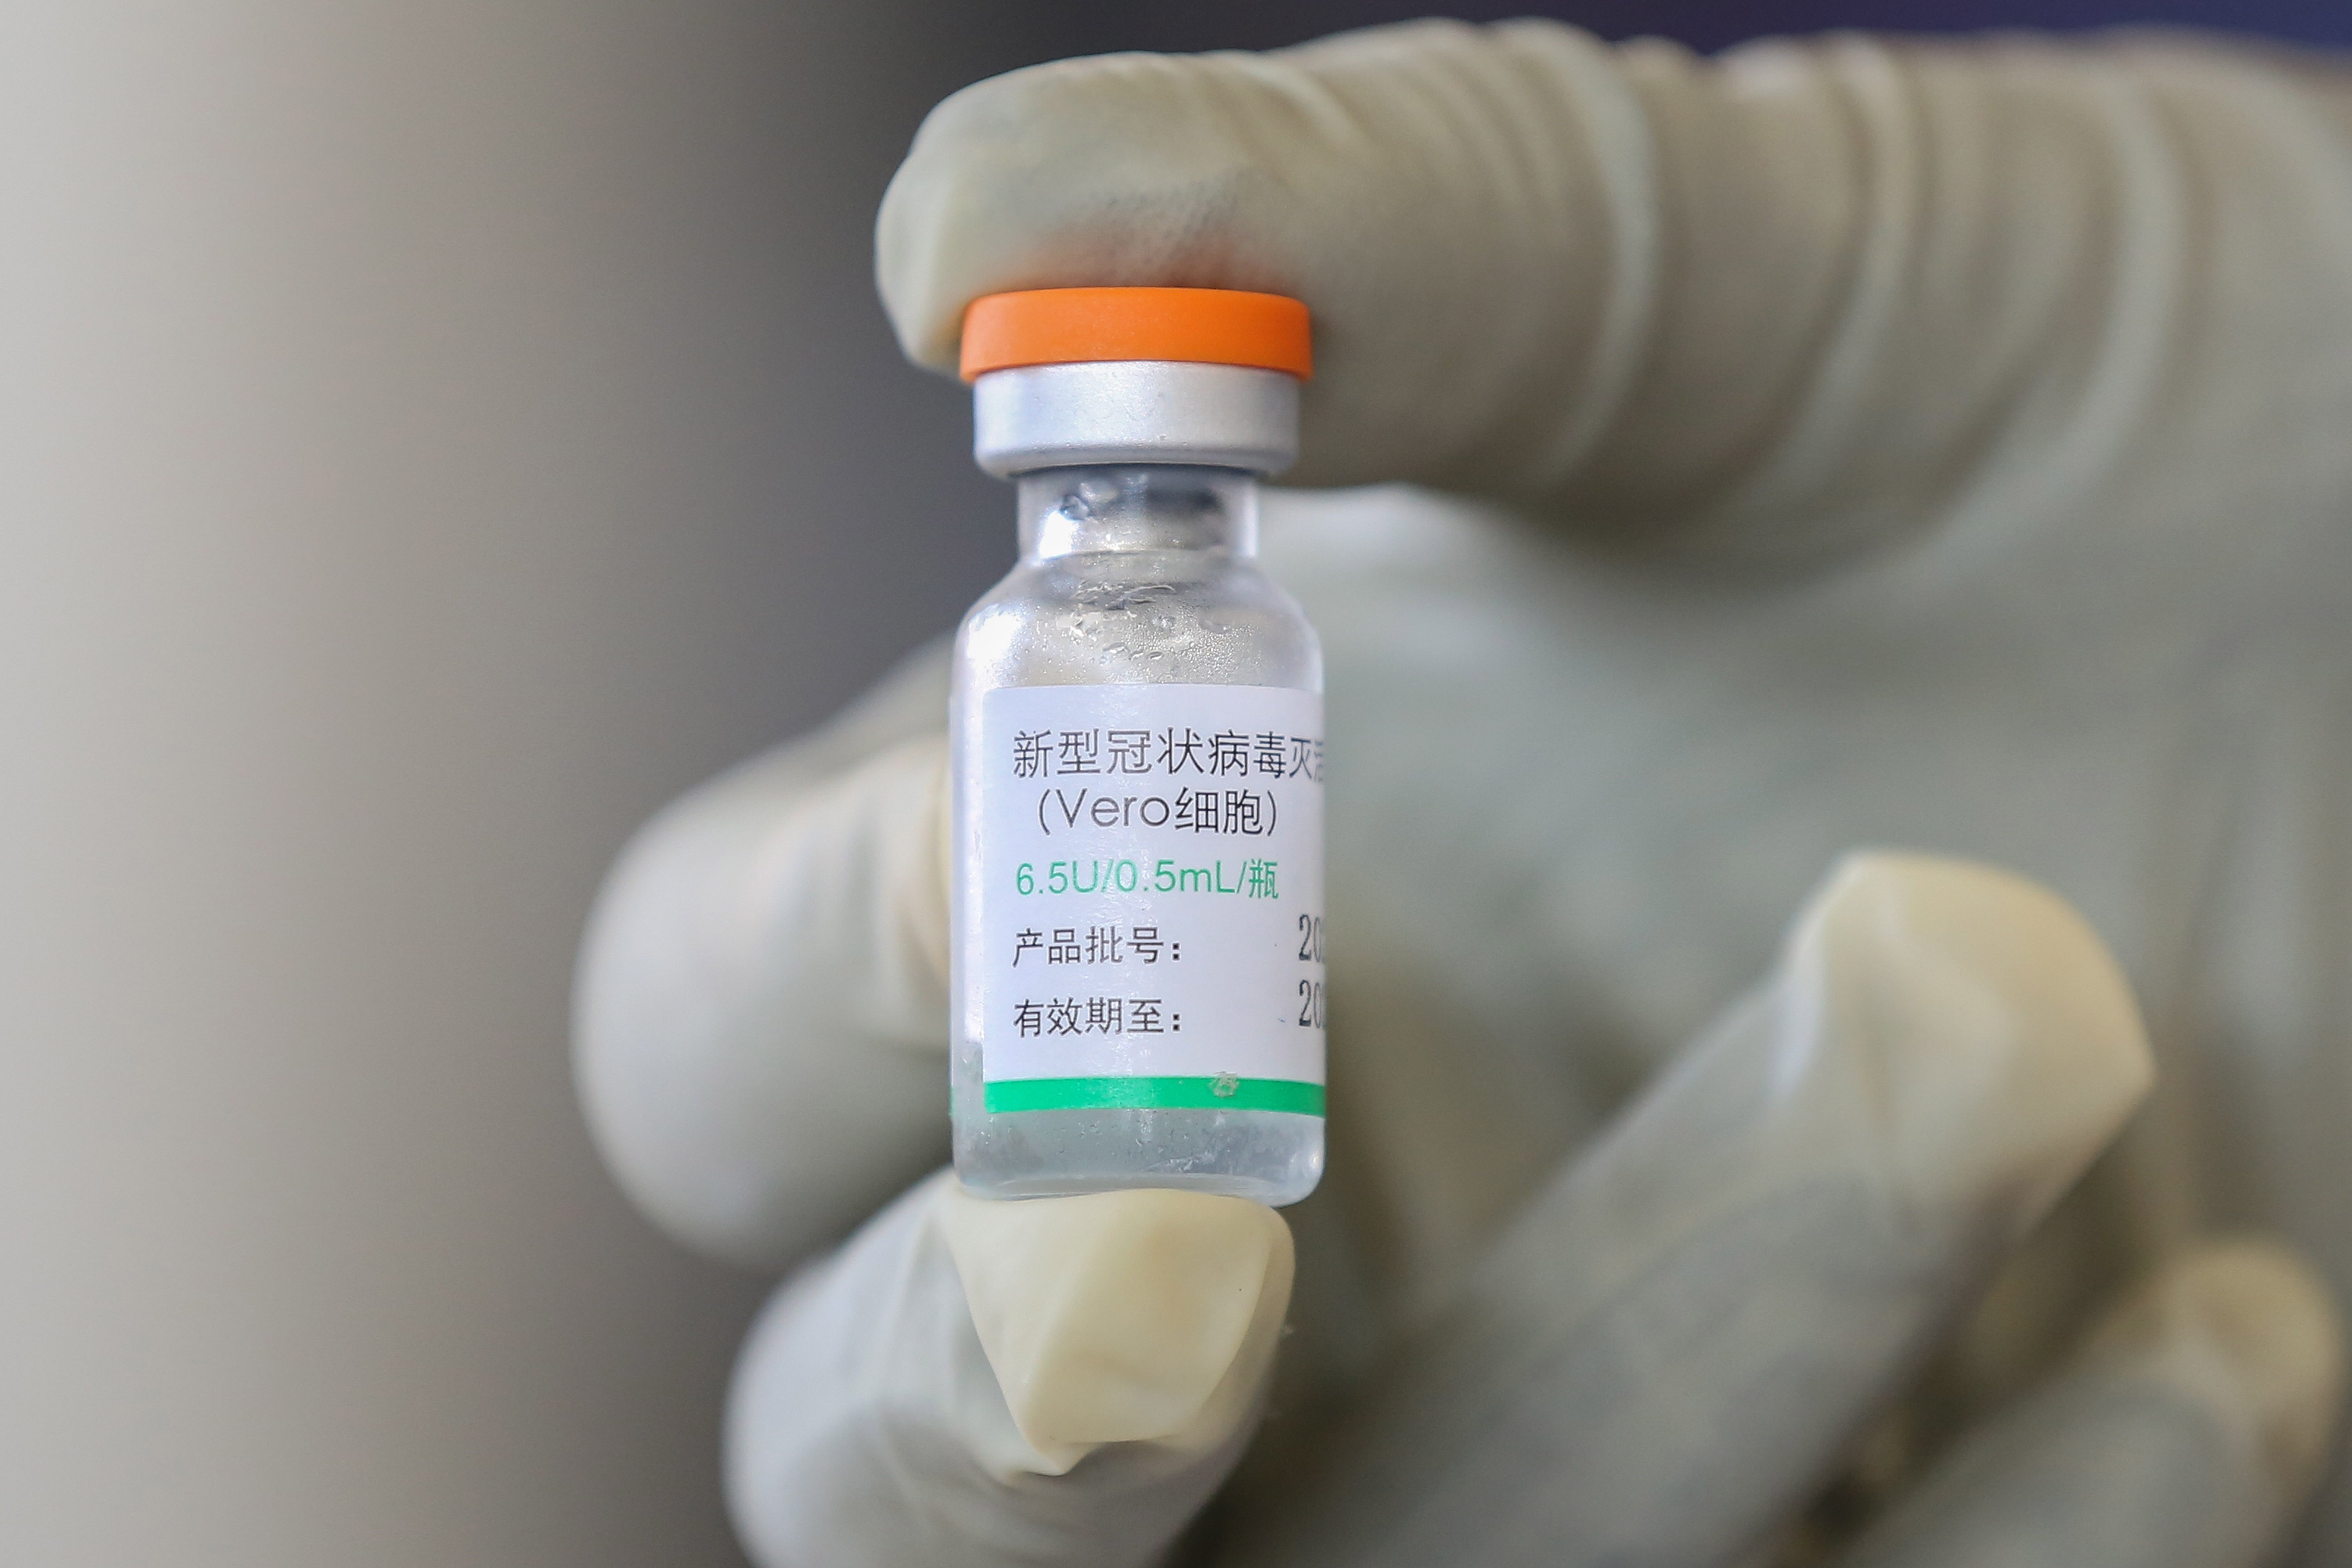 Sorprendente paso de China: admite que la eficacia de sus vacunas "no es alta"